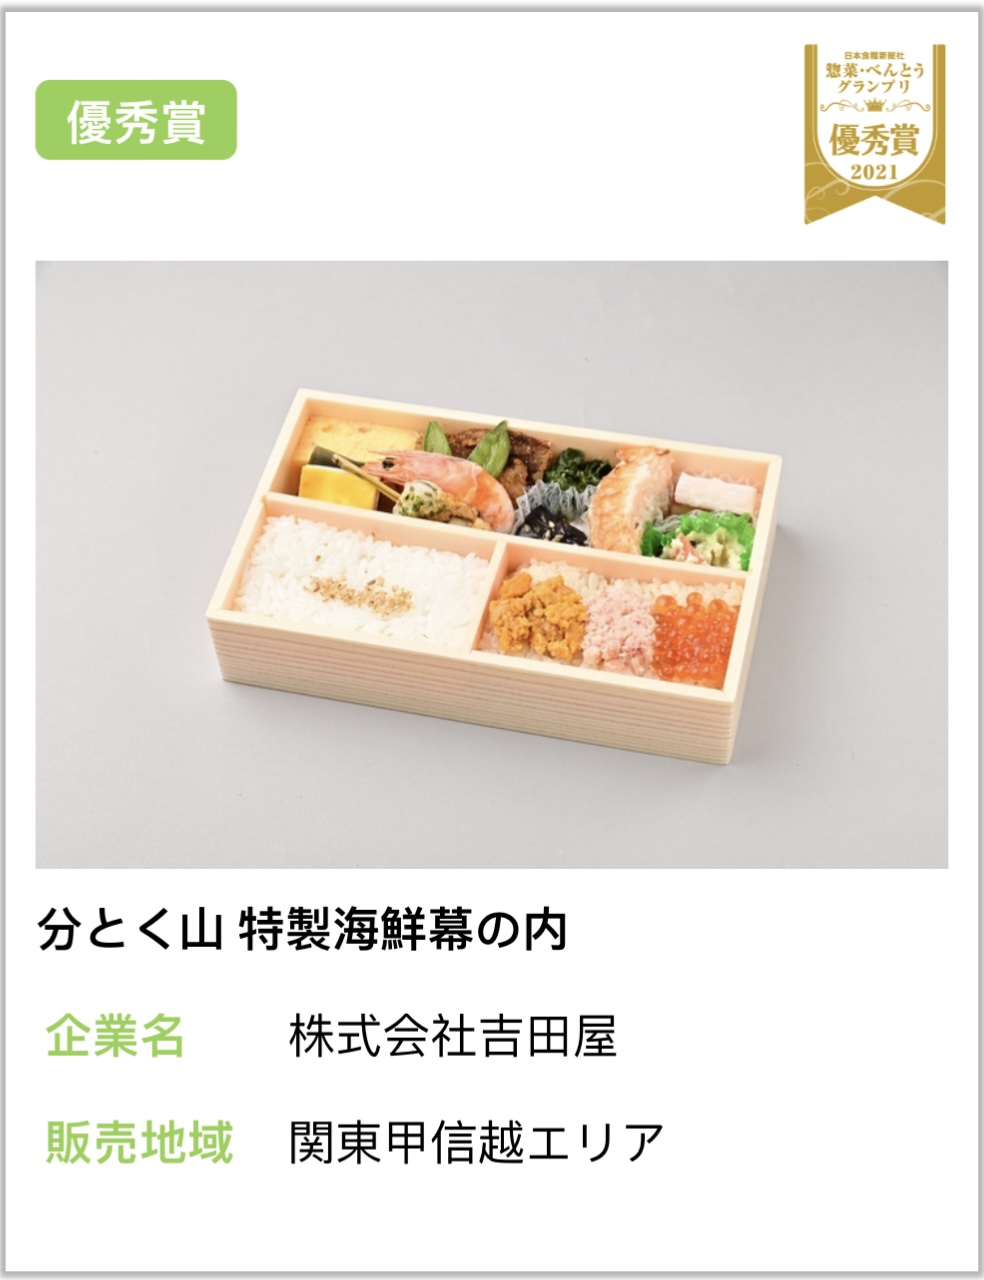 吉田屋便當獲得日本食糧新聞社FABEX 2021熟食/便當大獎賽「車站便當/便當組金獎」。  souzai-bento.com 截圖